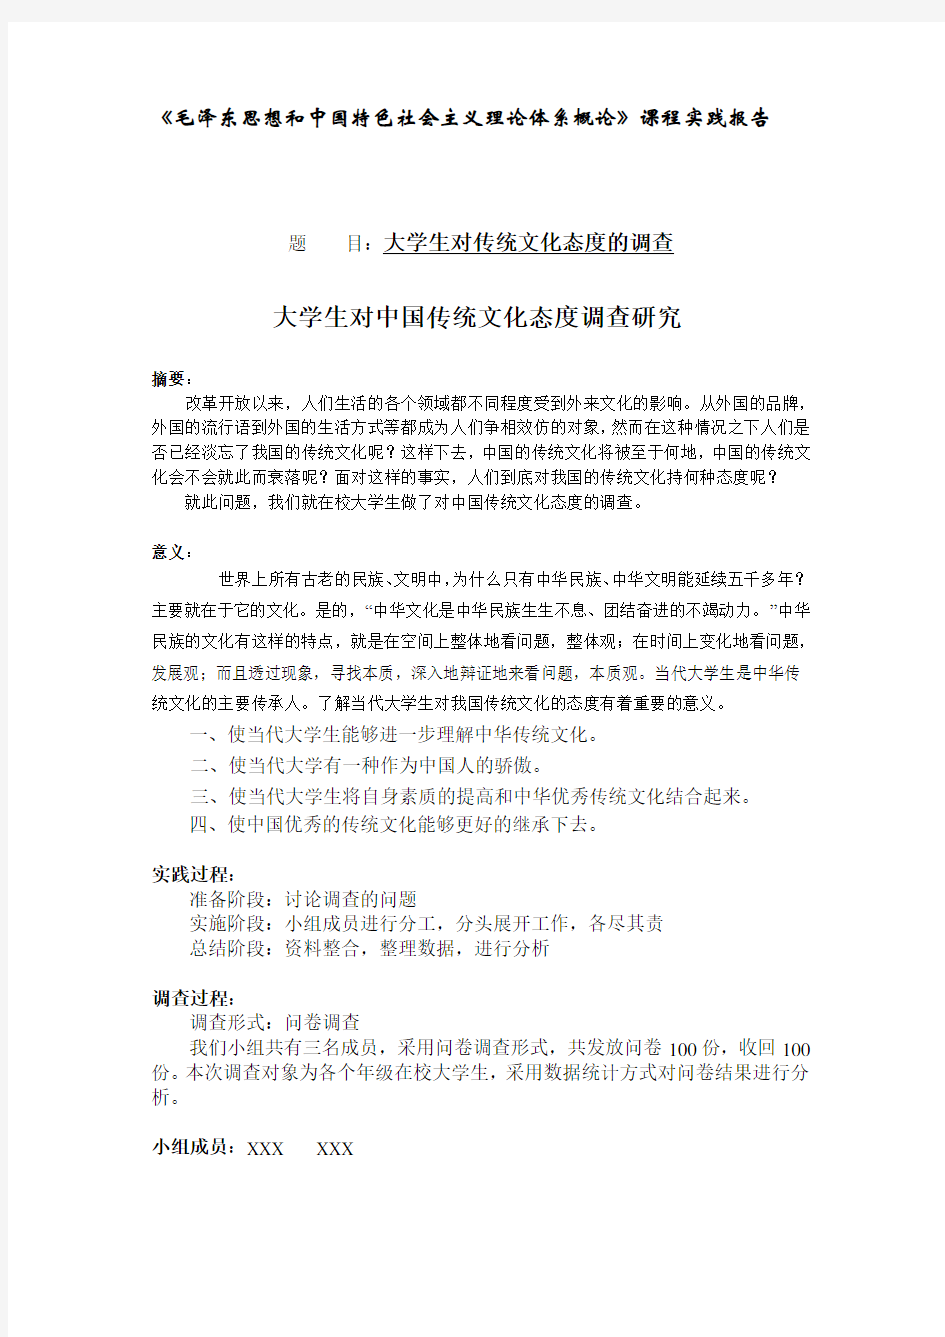 毛概关于“大学生对中国传统文化态度”的调查报告